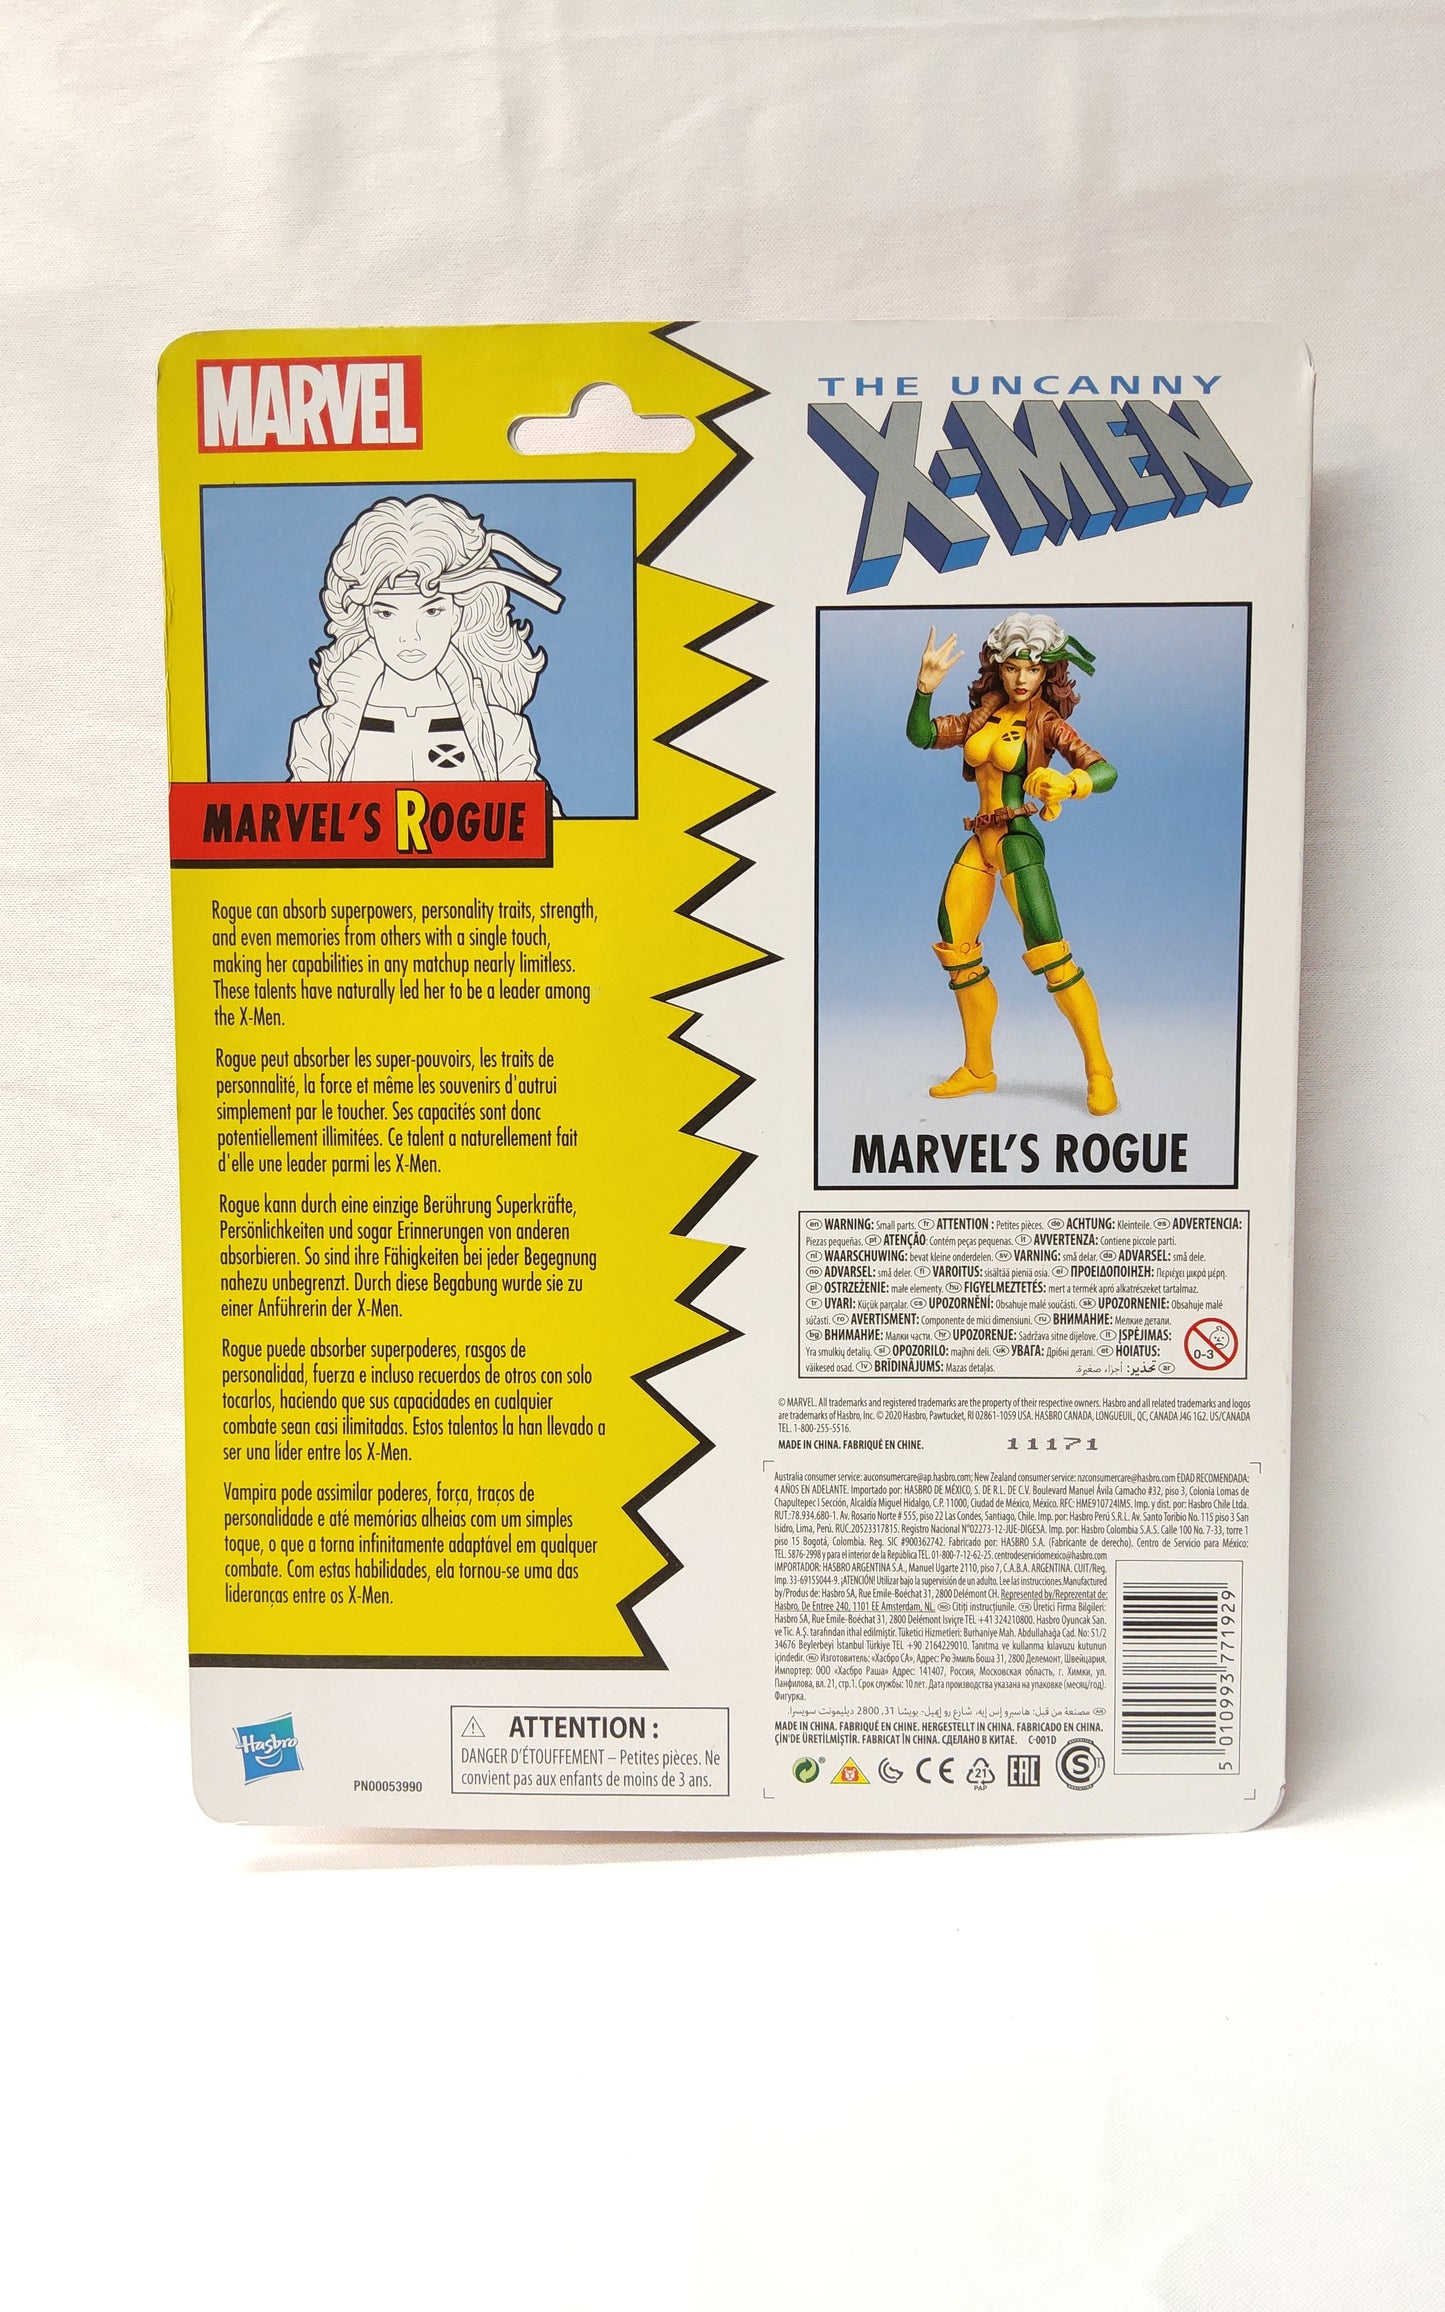 Marvel Legends Retro Rogue Uncanny X-Men 6" Action Figure